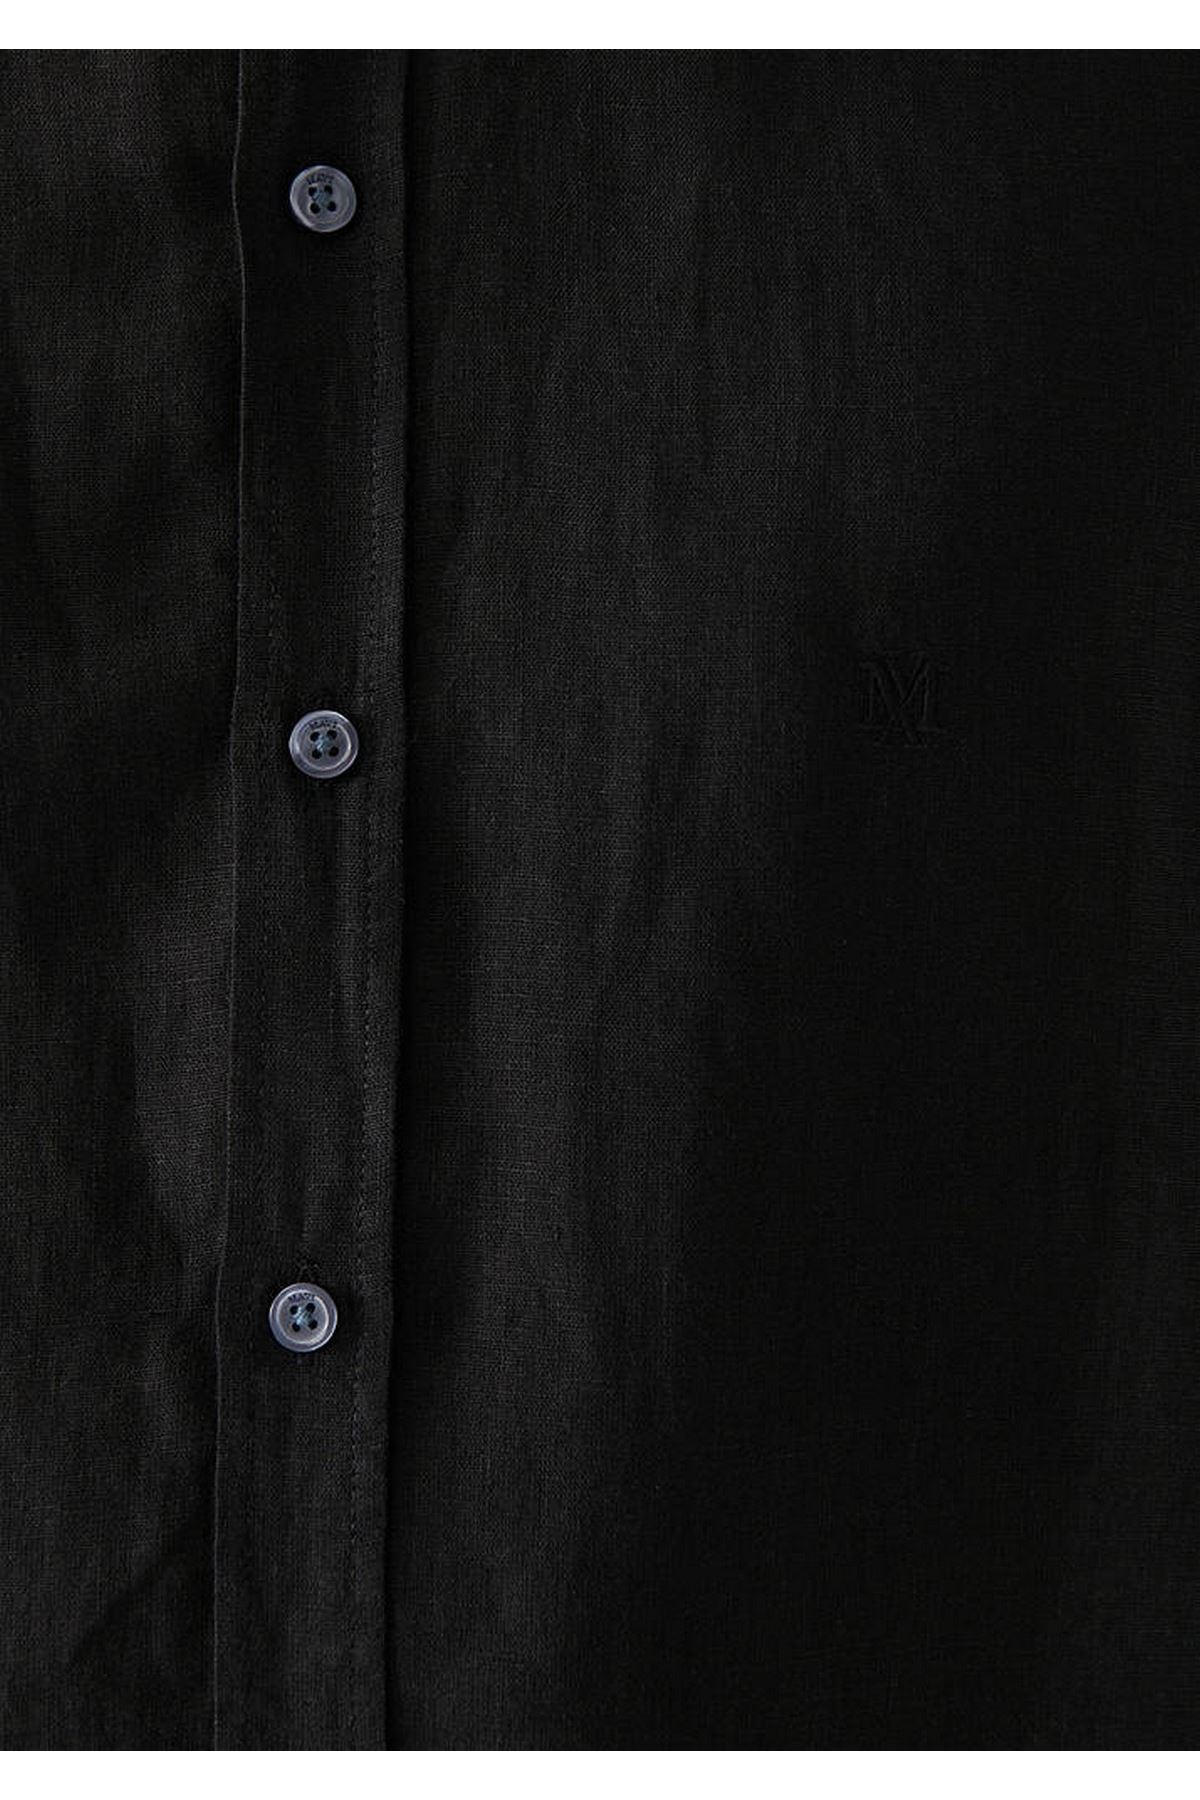 Keten   Mavi Erkek Siyah Gömlek - M021190-900